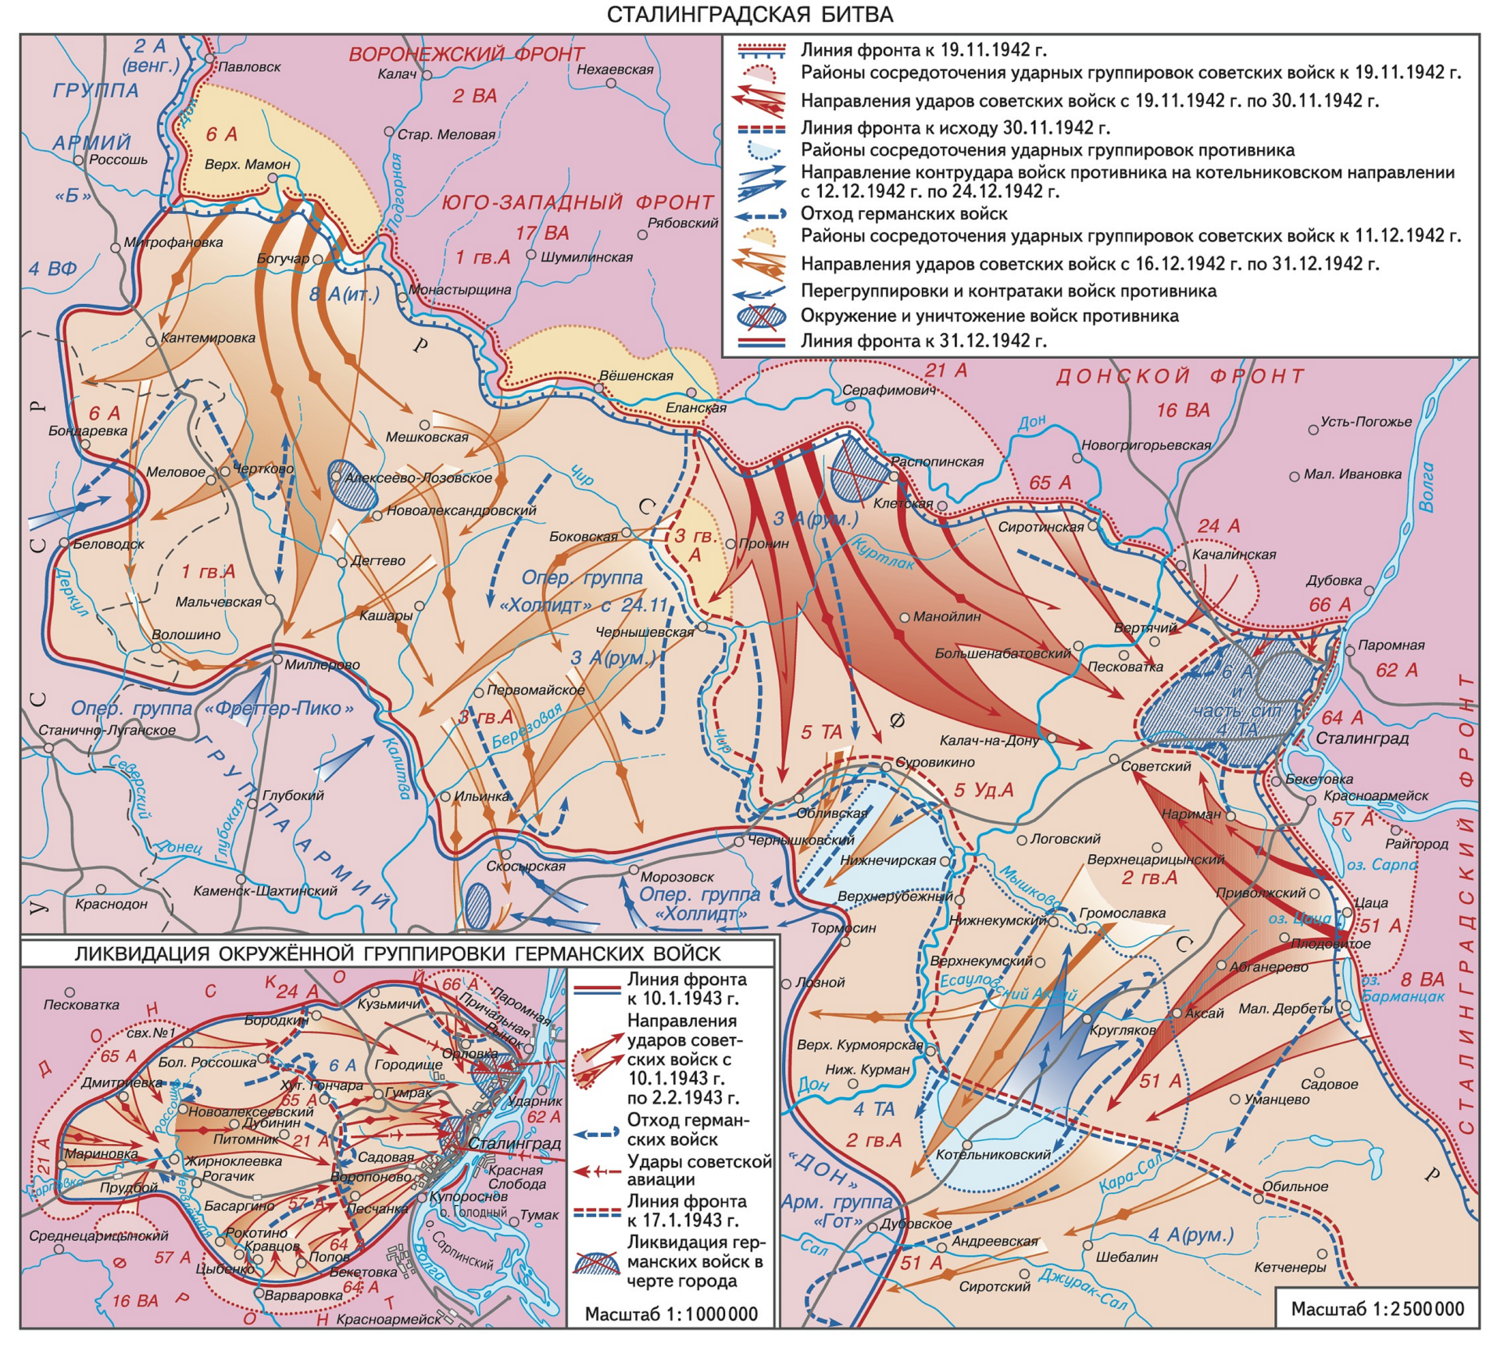 Название операции немецких войск под сталинградом. Карта Сталинградской битвы 1942-1943. Карта Сталинградской битвы 1942 года. Сталинградская битва (17 июля 1942 — 2 февраля 1943 года) карта.